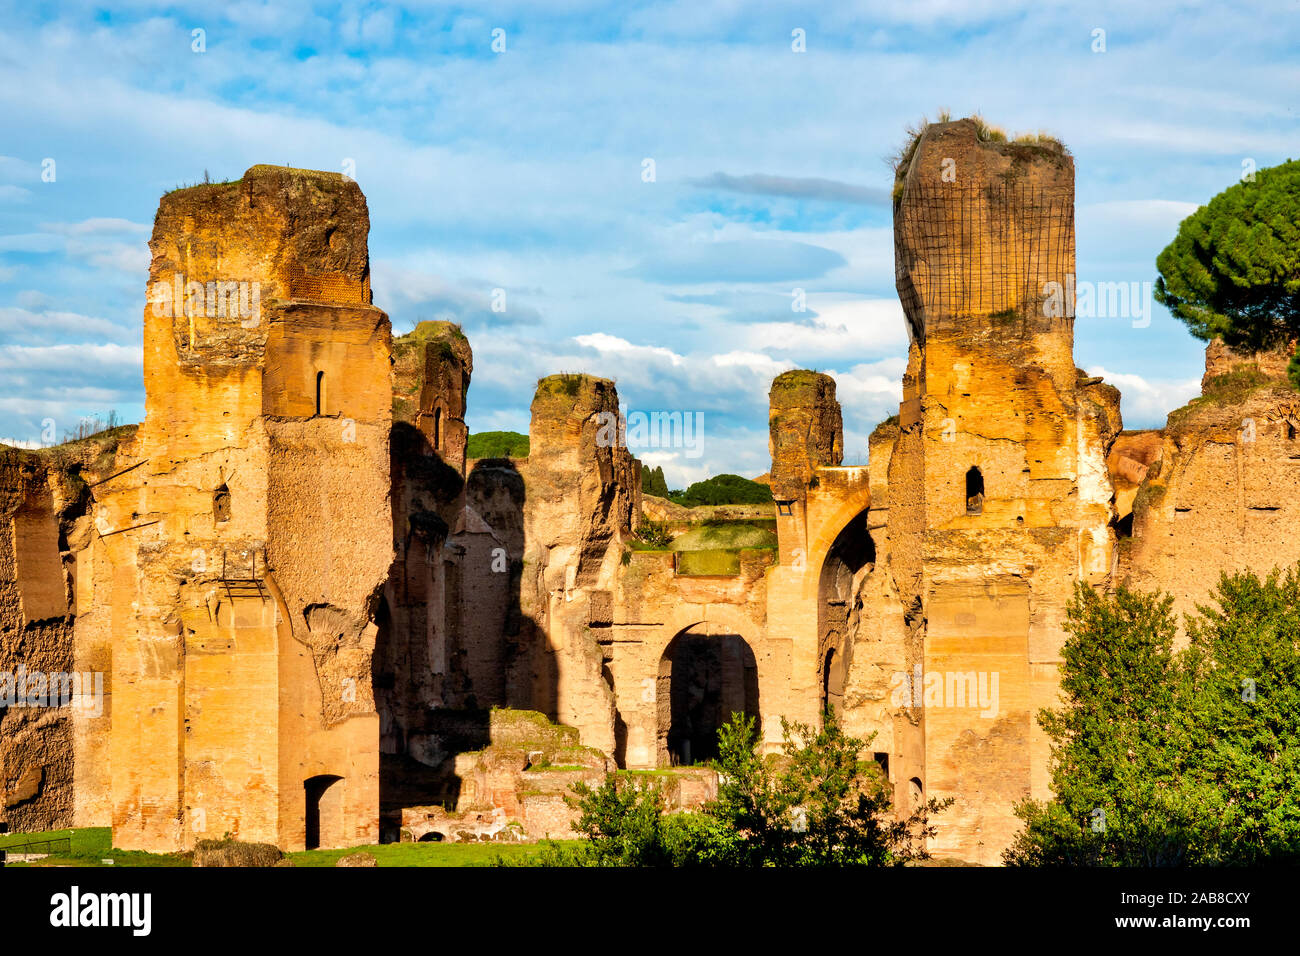 Vue sur les Thermes de Caracalla, Rome, Italie Banque D'Images